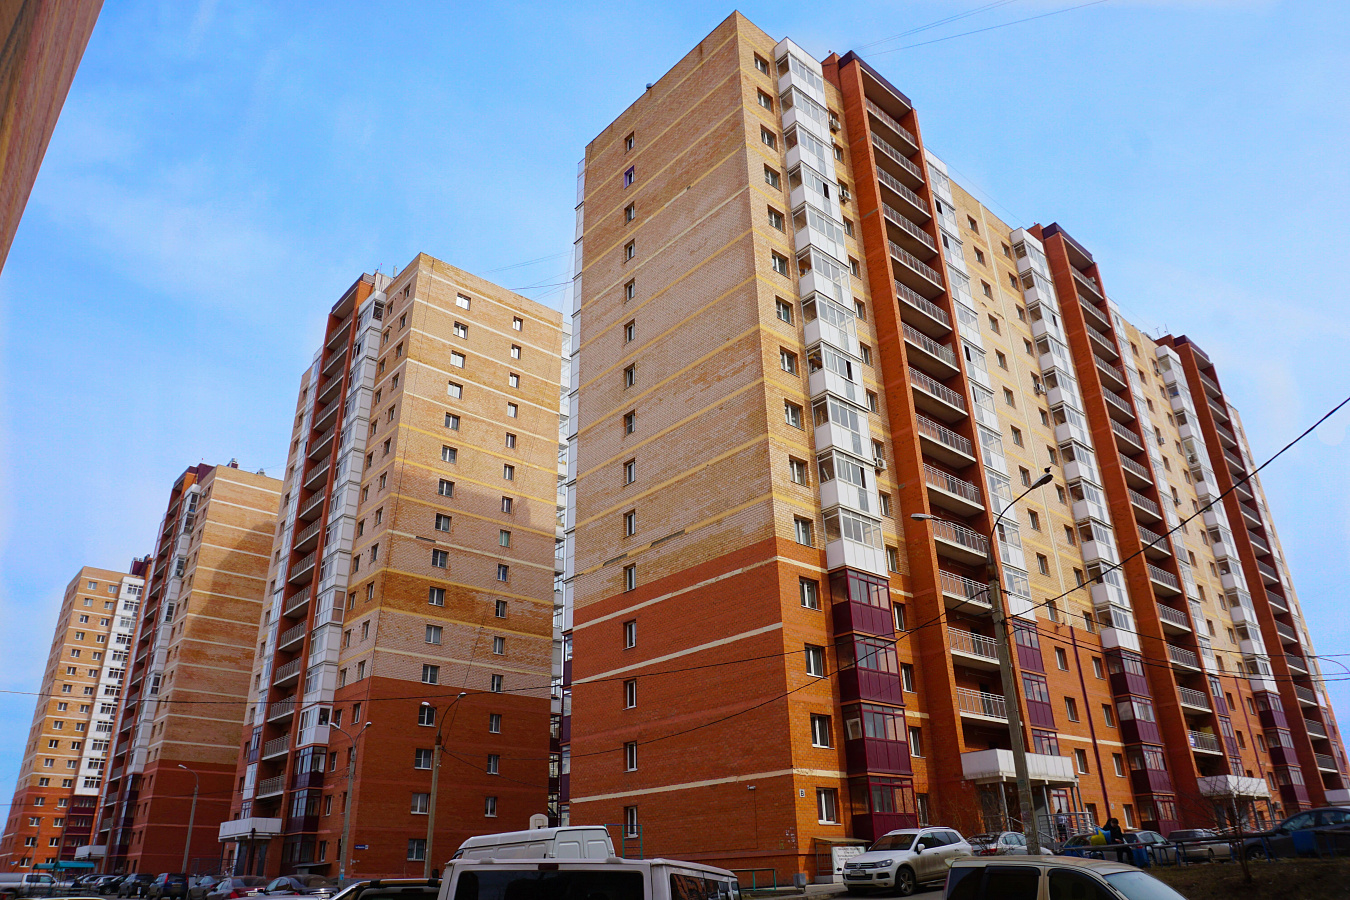 Группа жилых домов со встроенными нежилыми помещениями расположена  в Октябрьском районе г. Иркутска 0